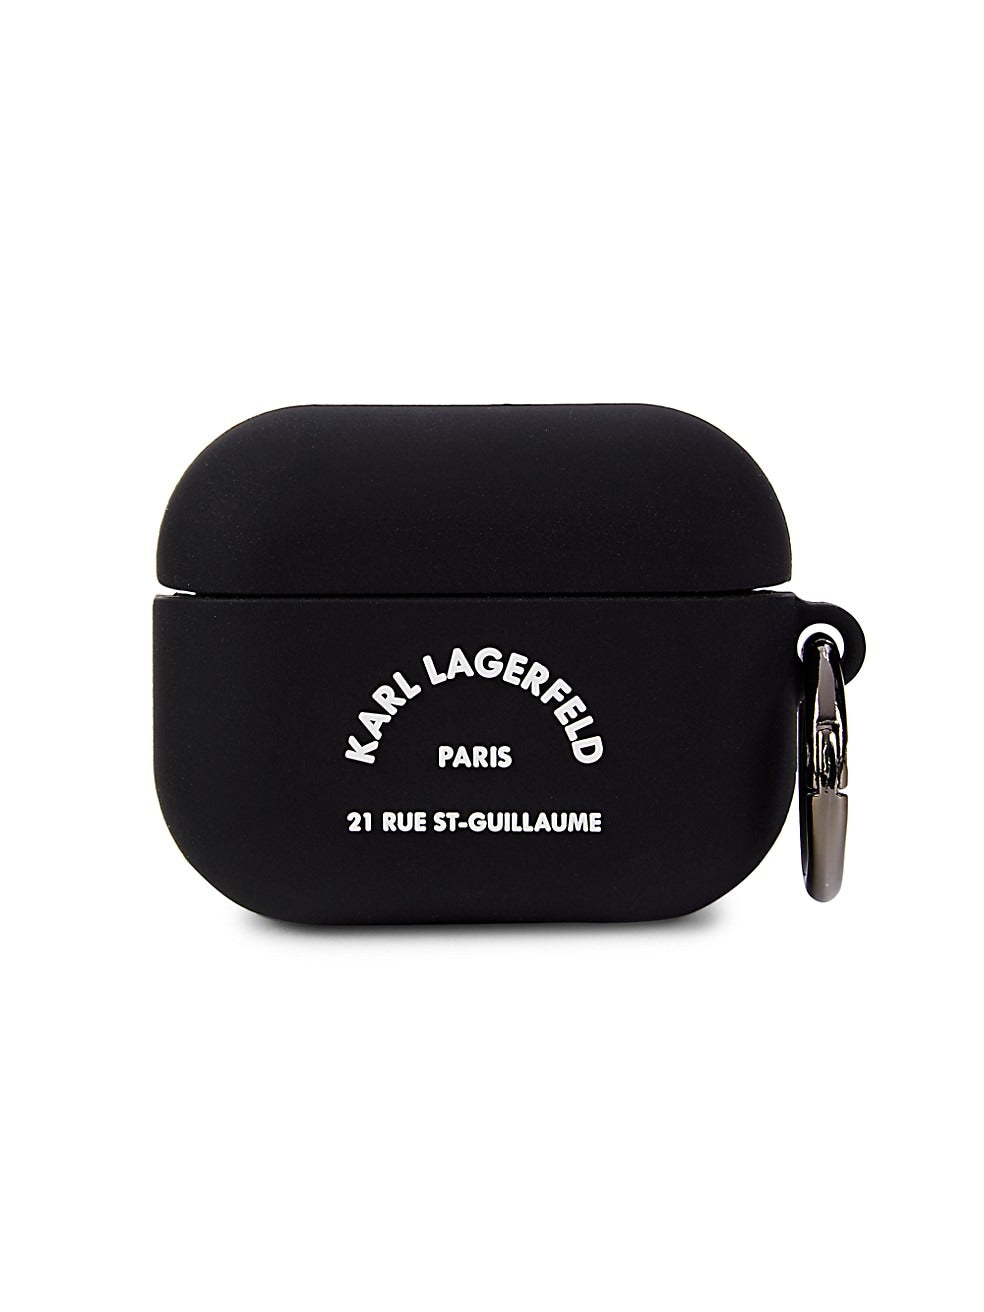 حقيبة كارل لاغرفيلد باريس لأجهزة AirPods 3